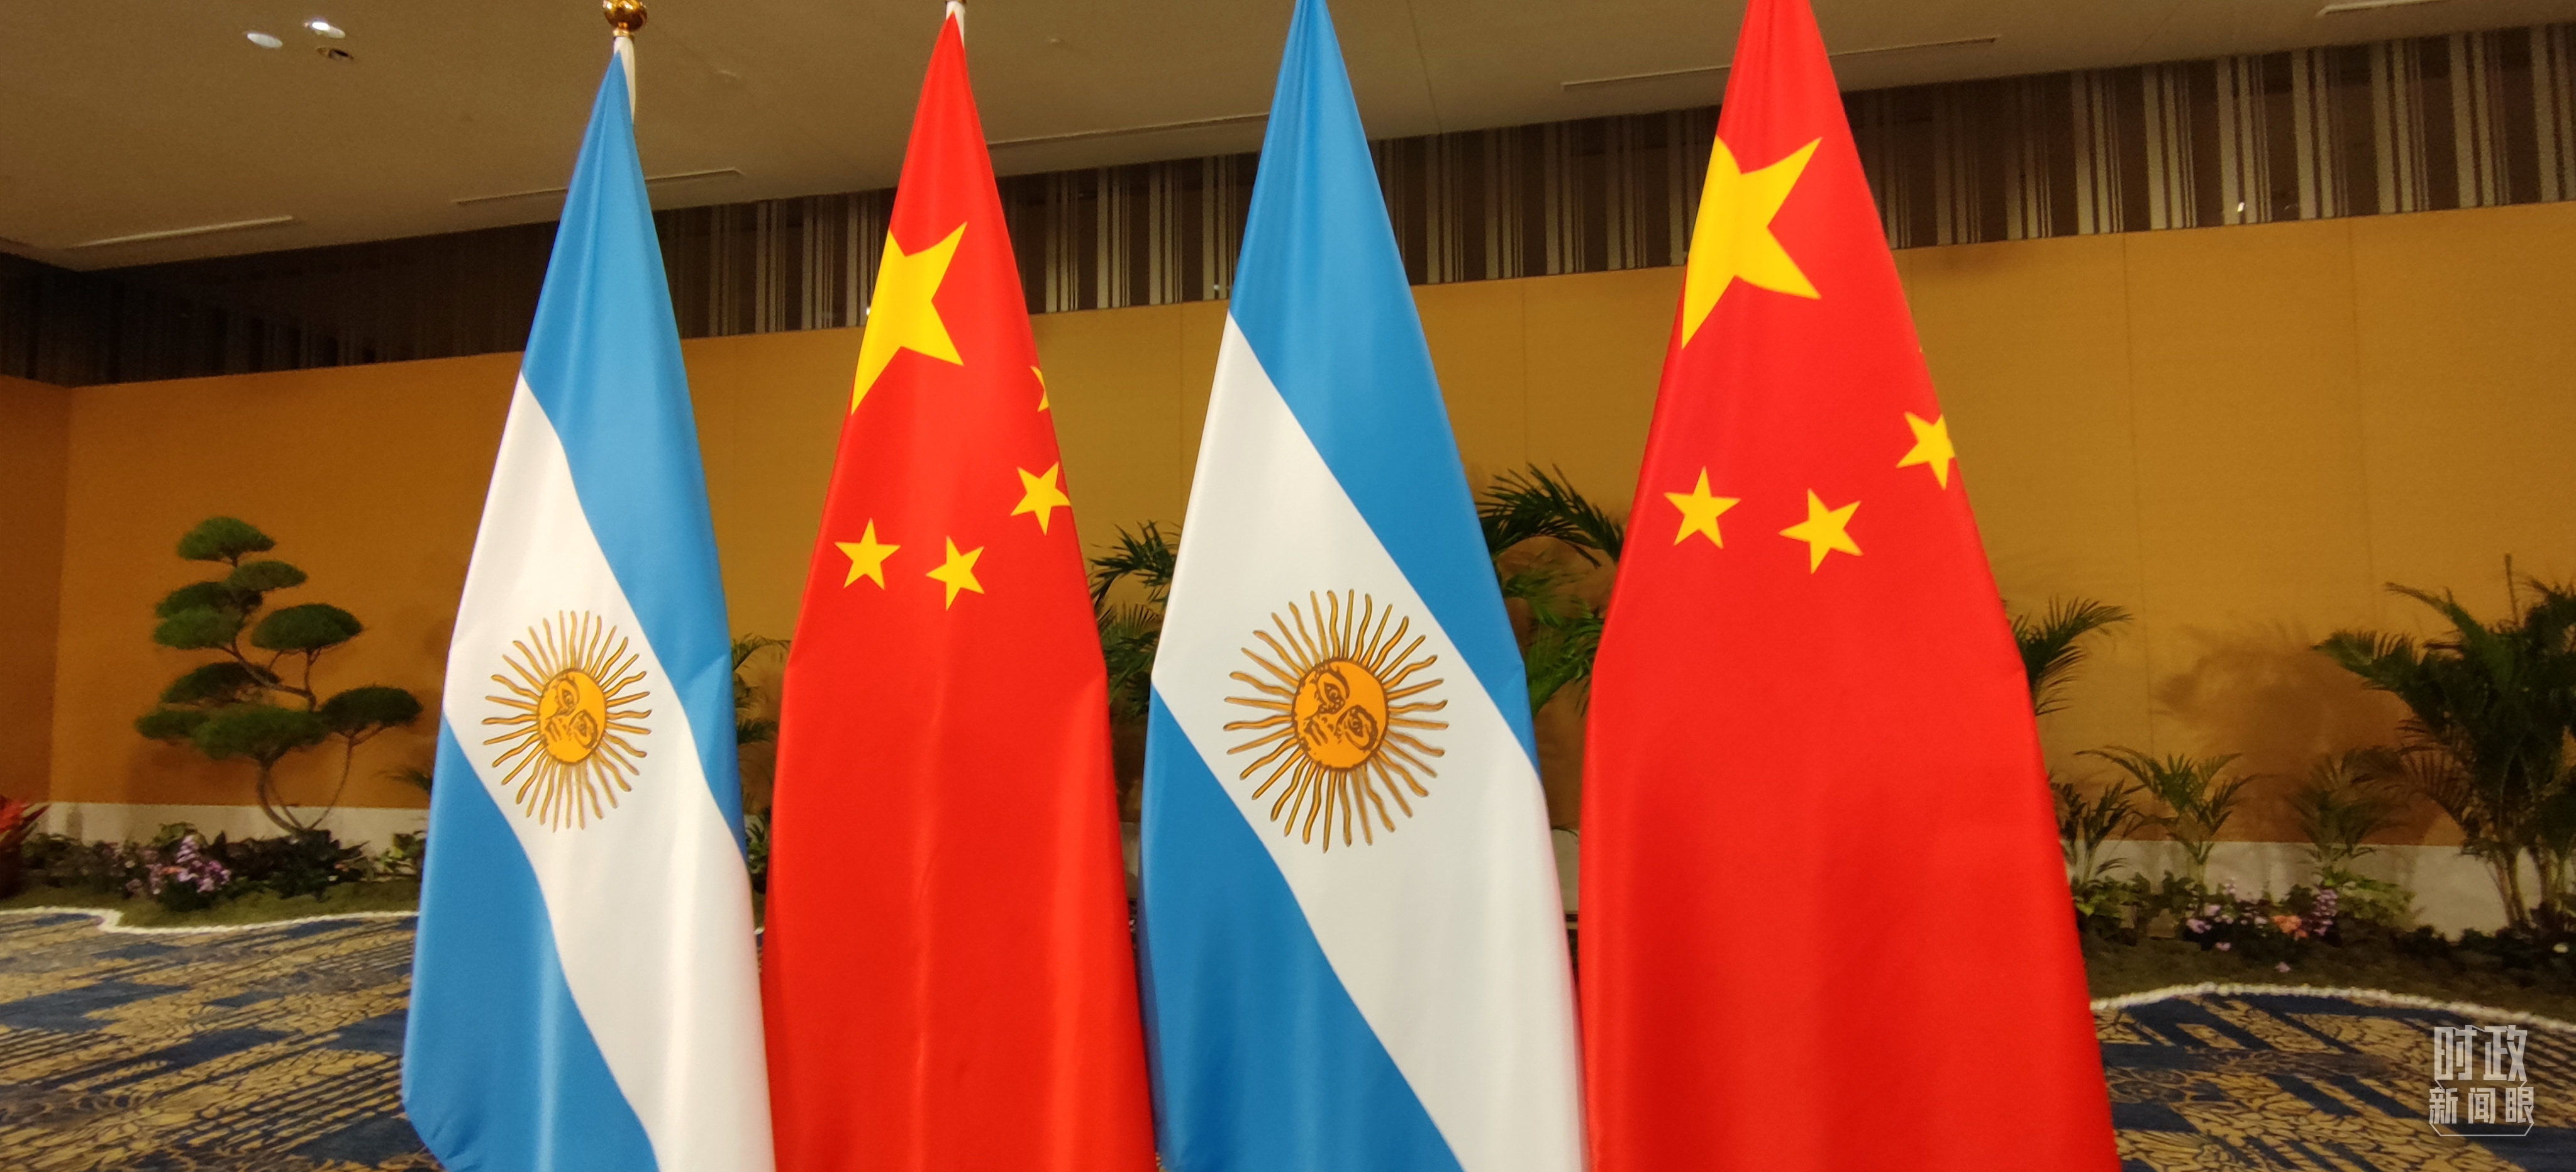 △会见现场的中国和阿根廷两国国旗。（总台央视记者耿小龙拍摄）